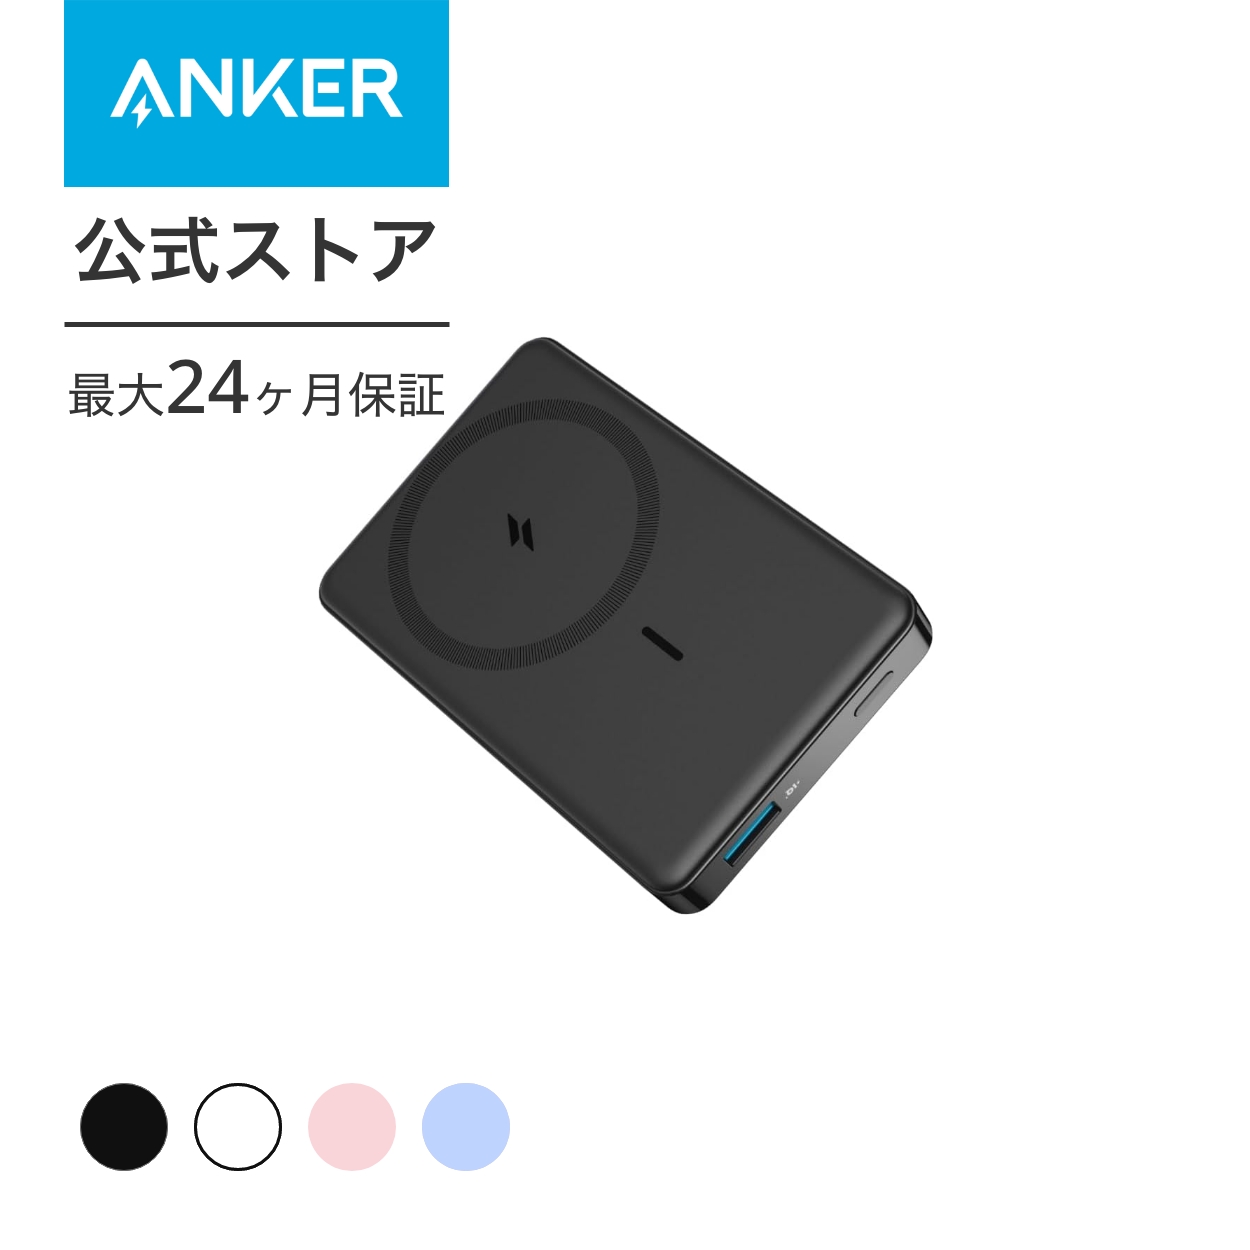 Anker 334 MagGo Battery (PowerCore 10000) (マグネット式ワ...